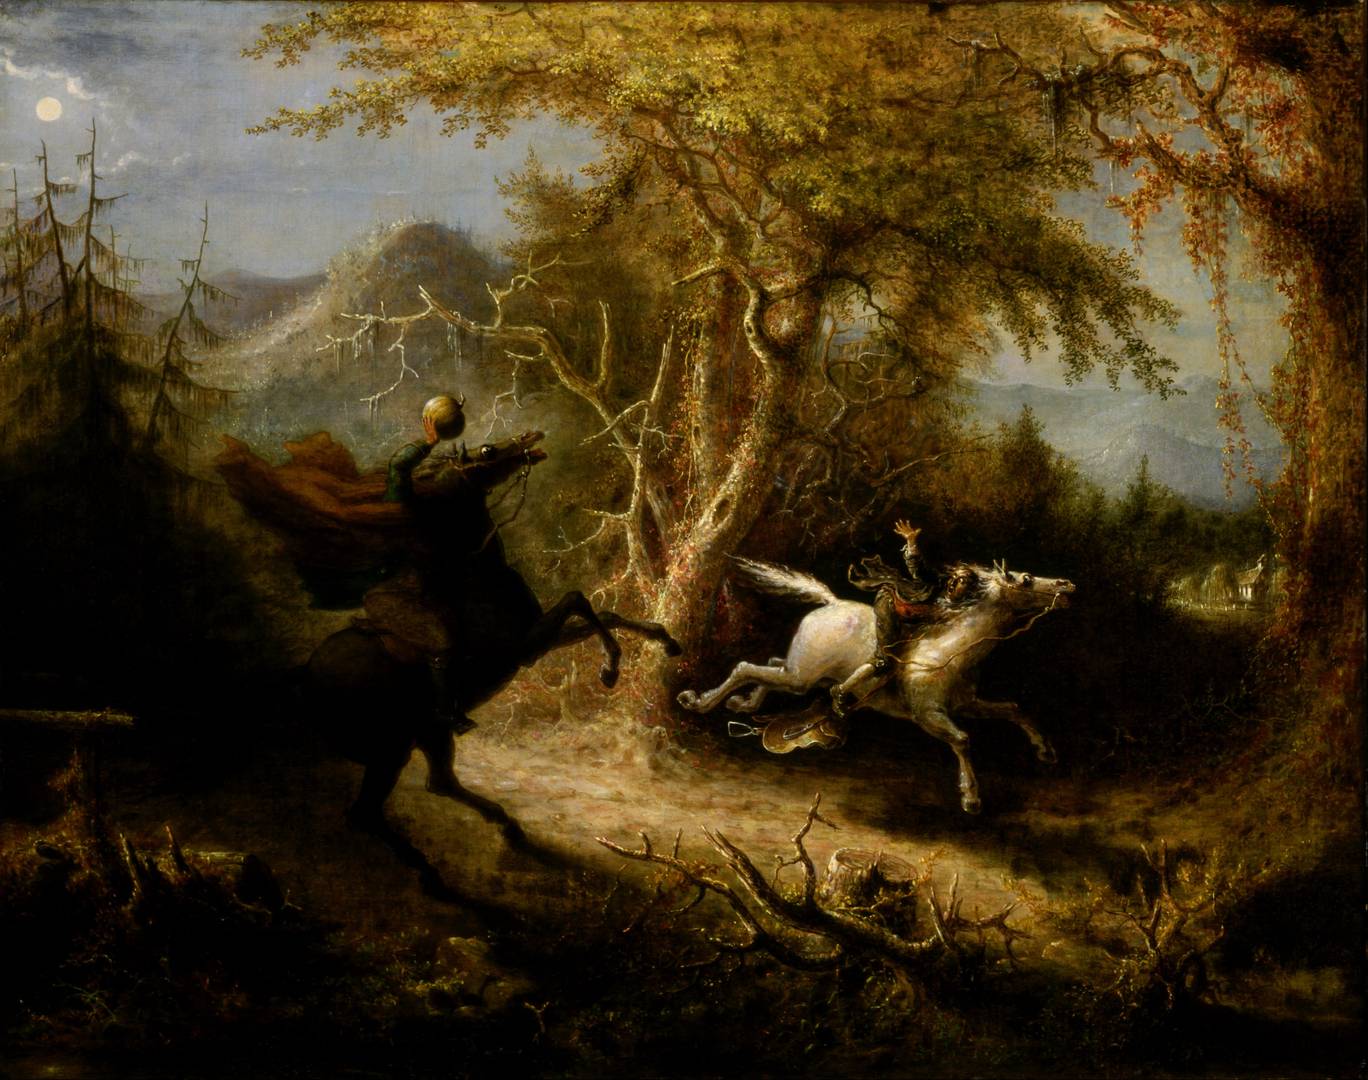 Джон Куидор. Всадник без головы преследует Икабода Крейна. 1858